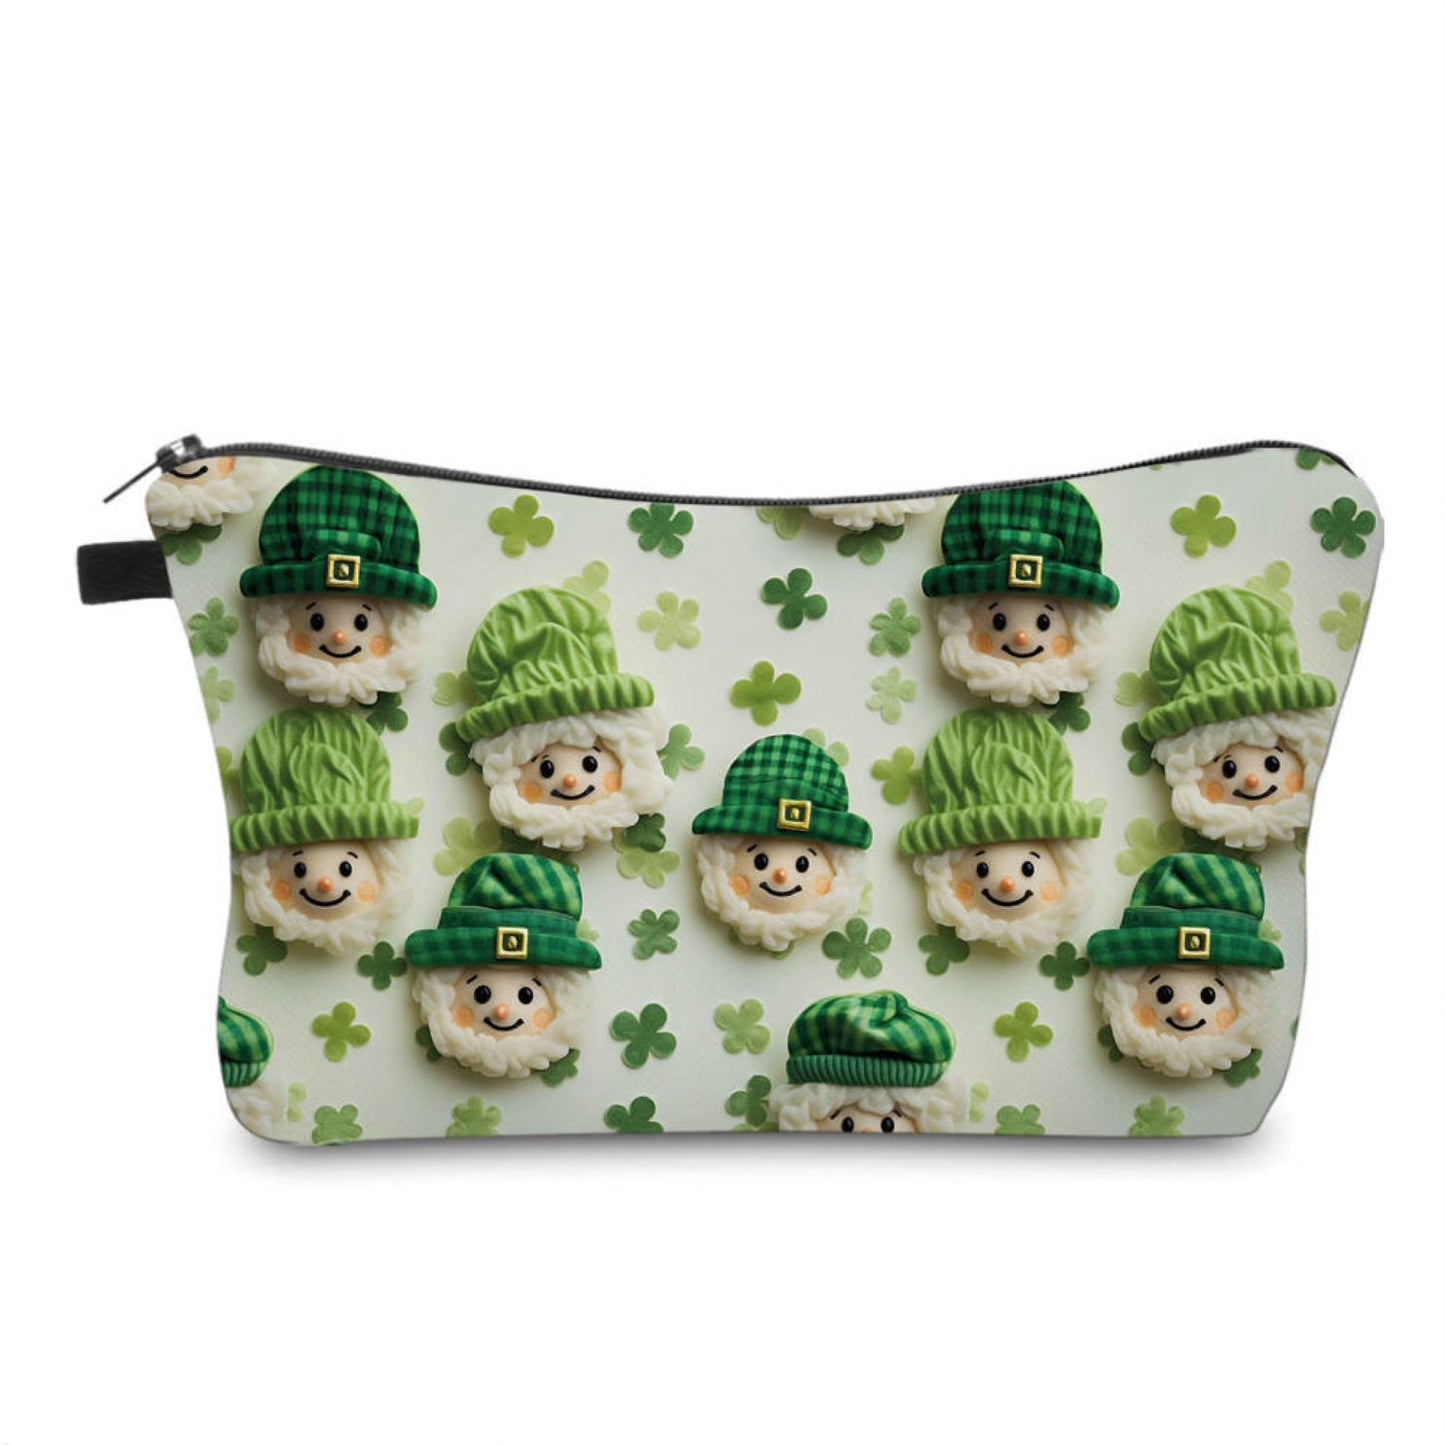 Pouch - St. Patrick’s Day - 3D Leprechauns